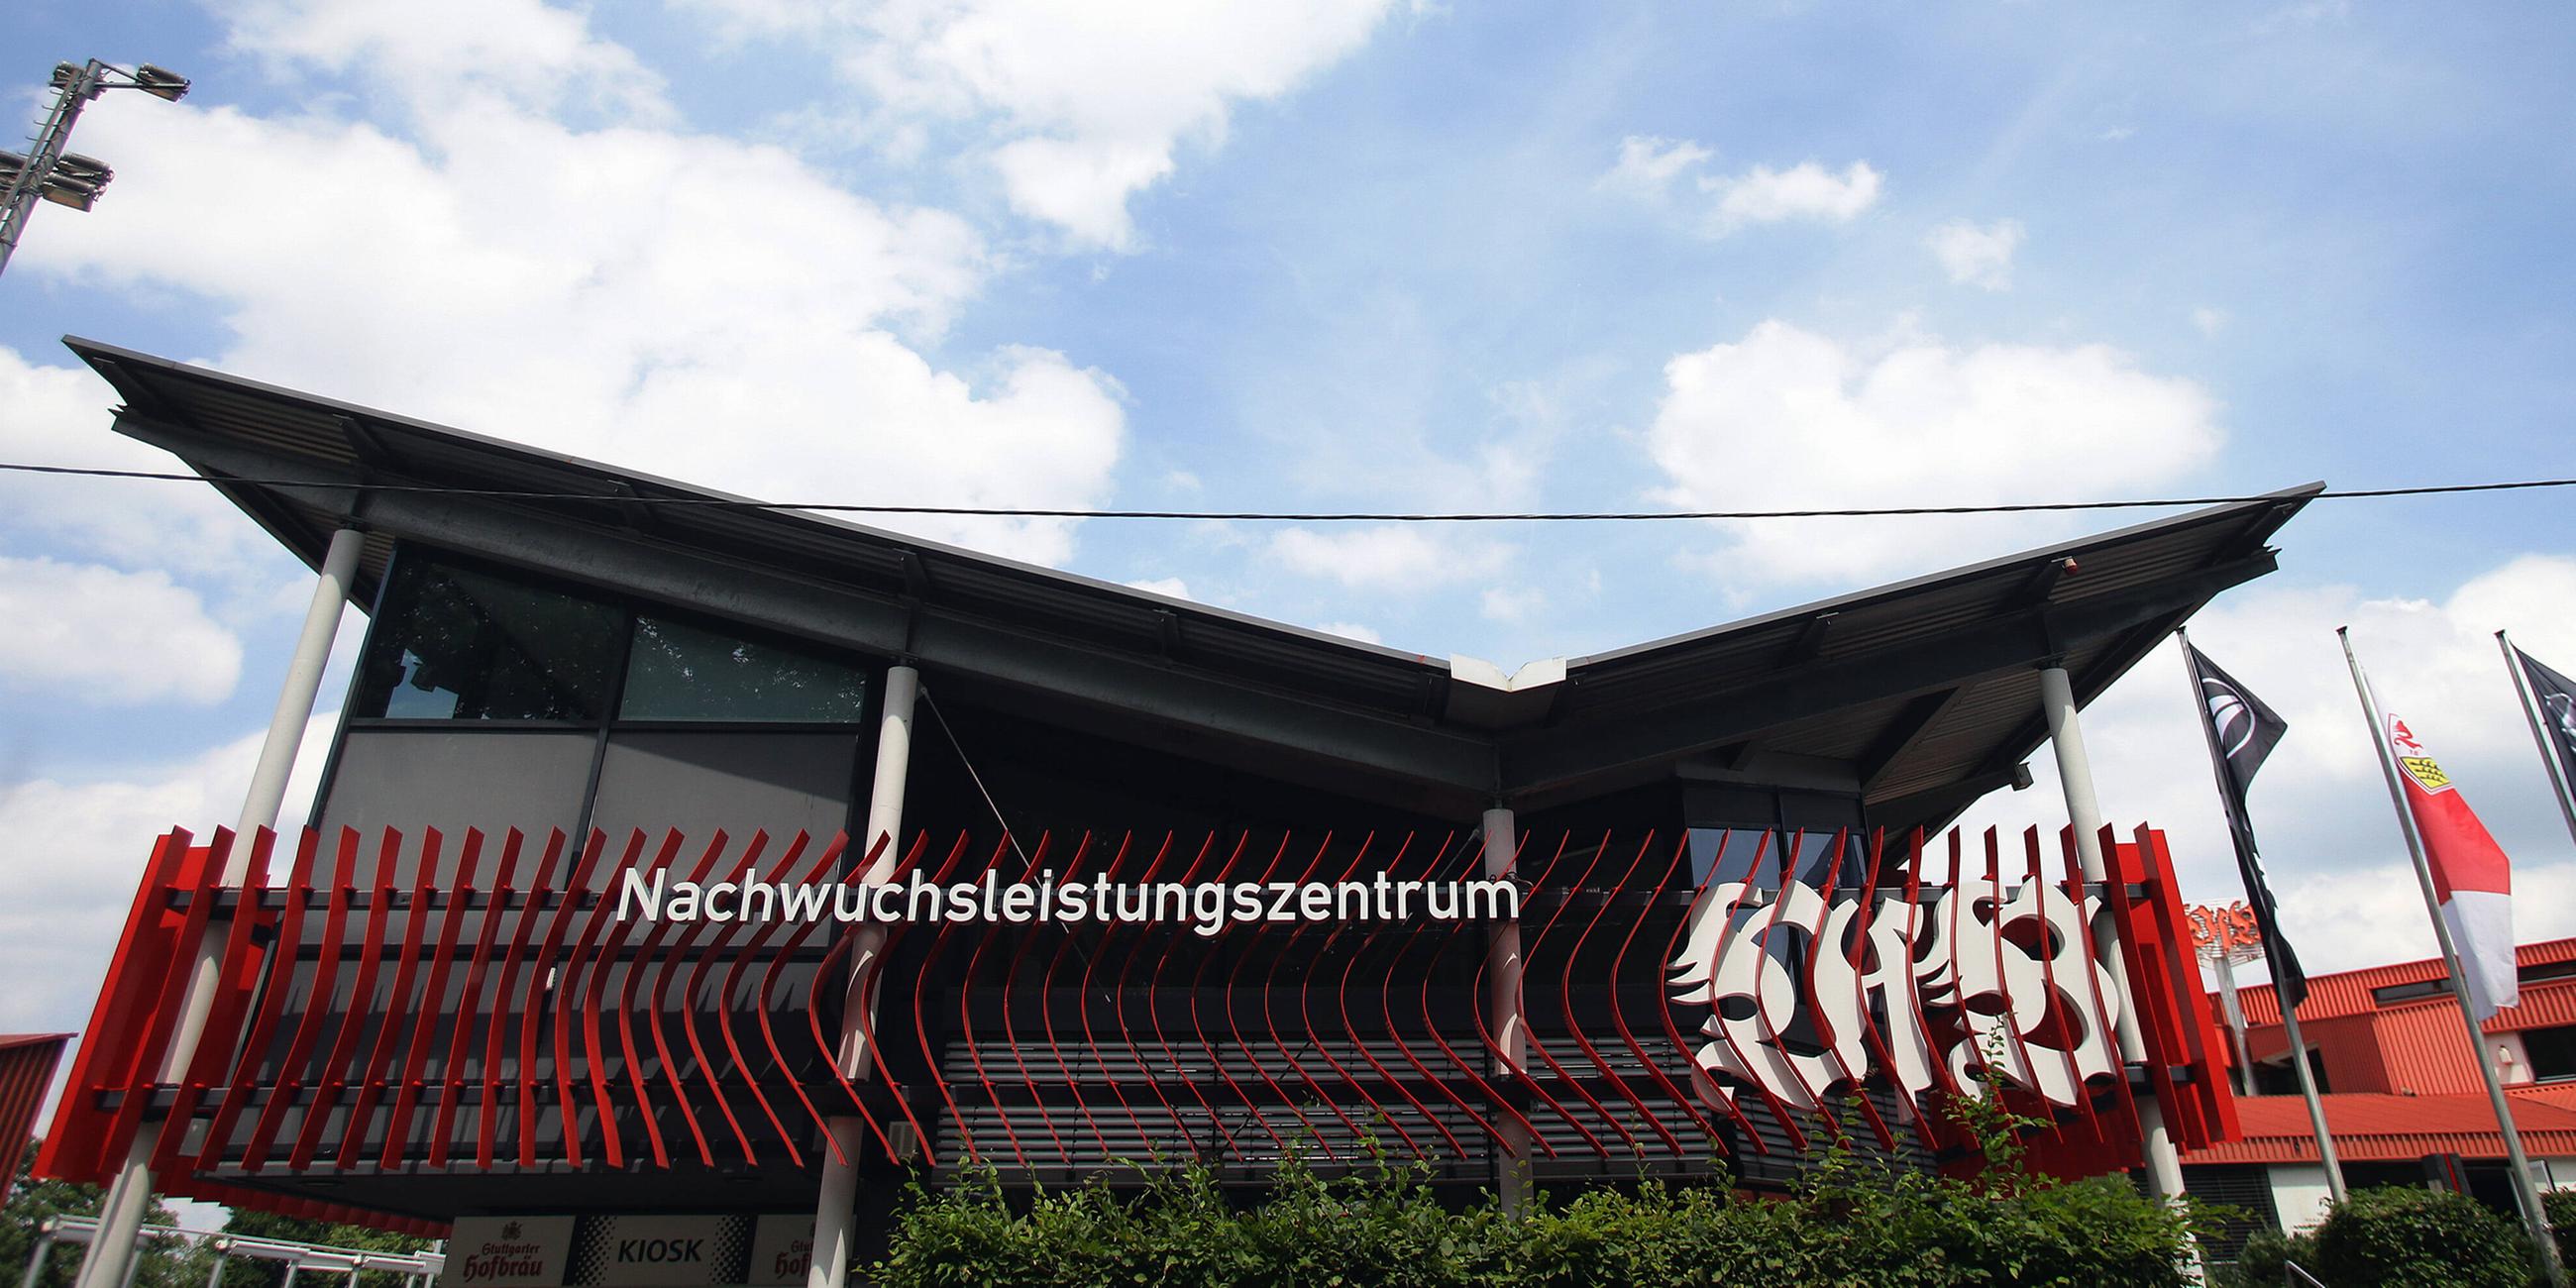 Nachwuchsleistungszentrum des VfB Stuttgart